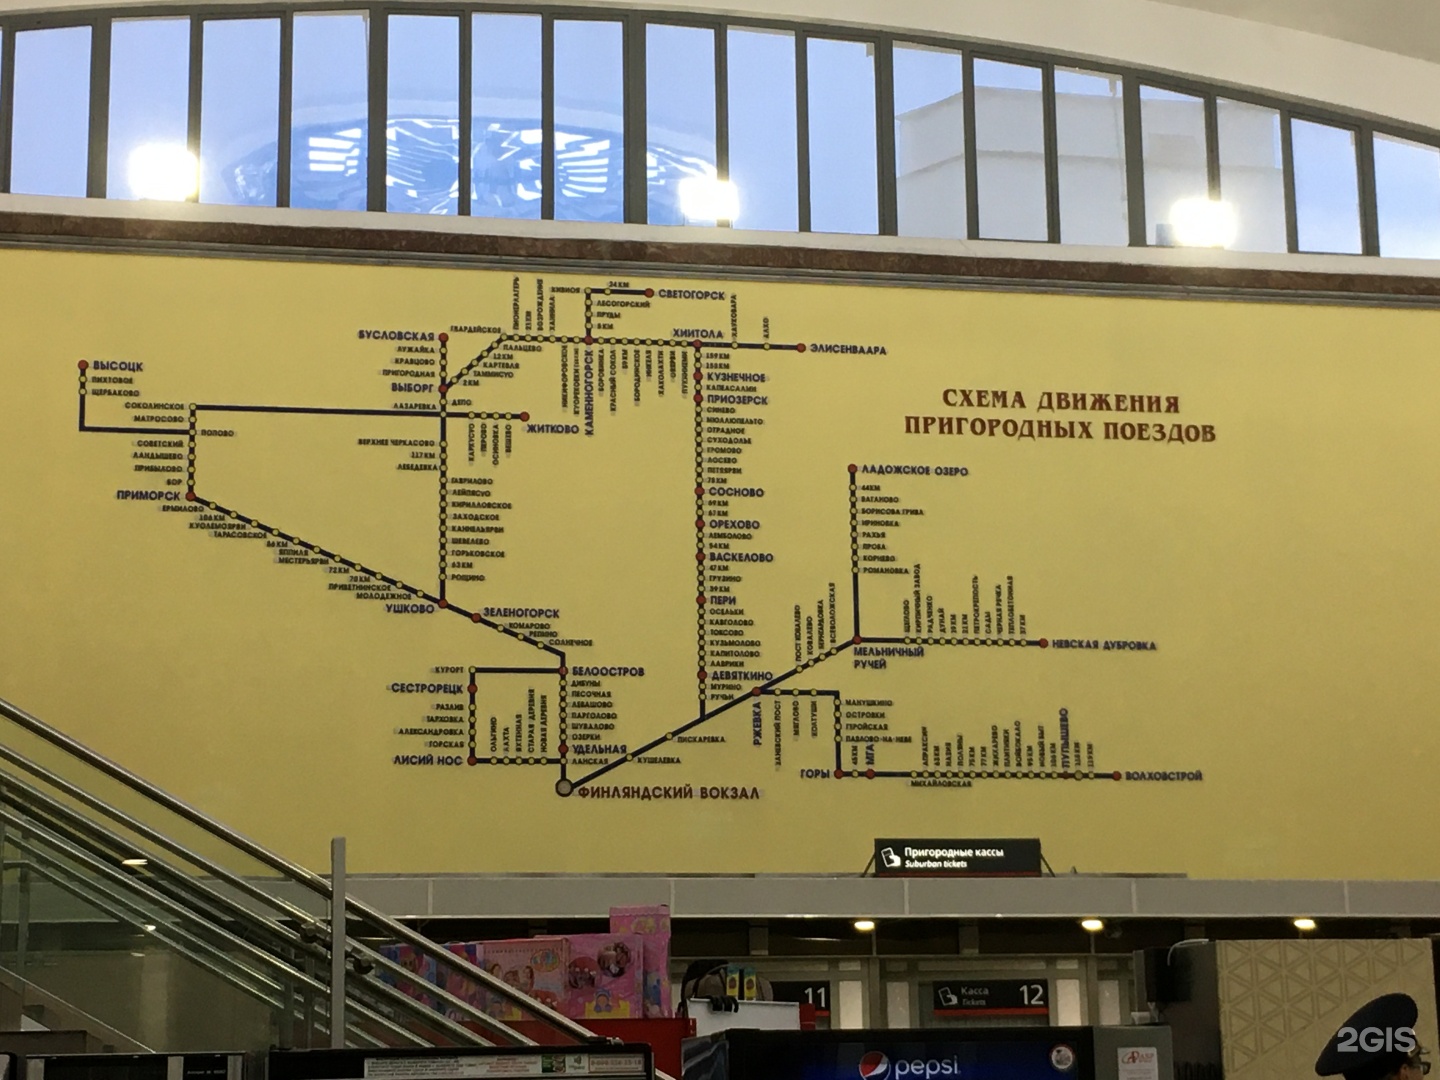 Расписание финляндского вокзала спб на сегодня. Площадь Ленина Финляндский вокзал карта.